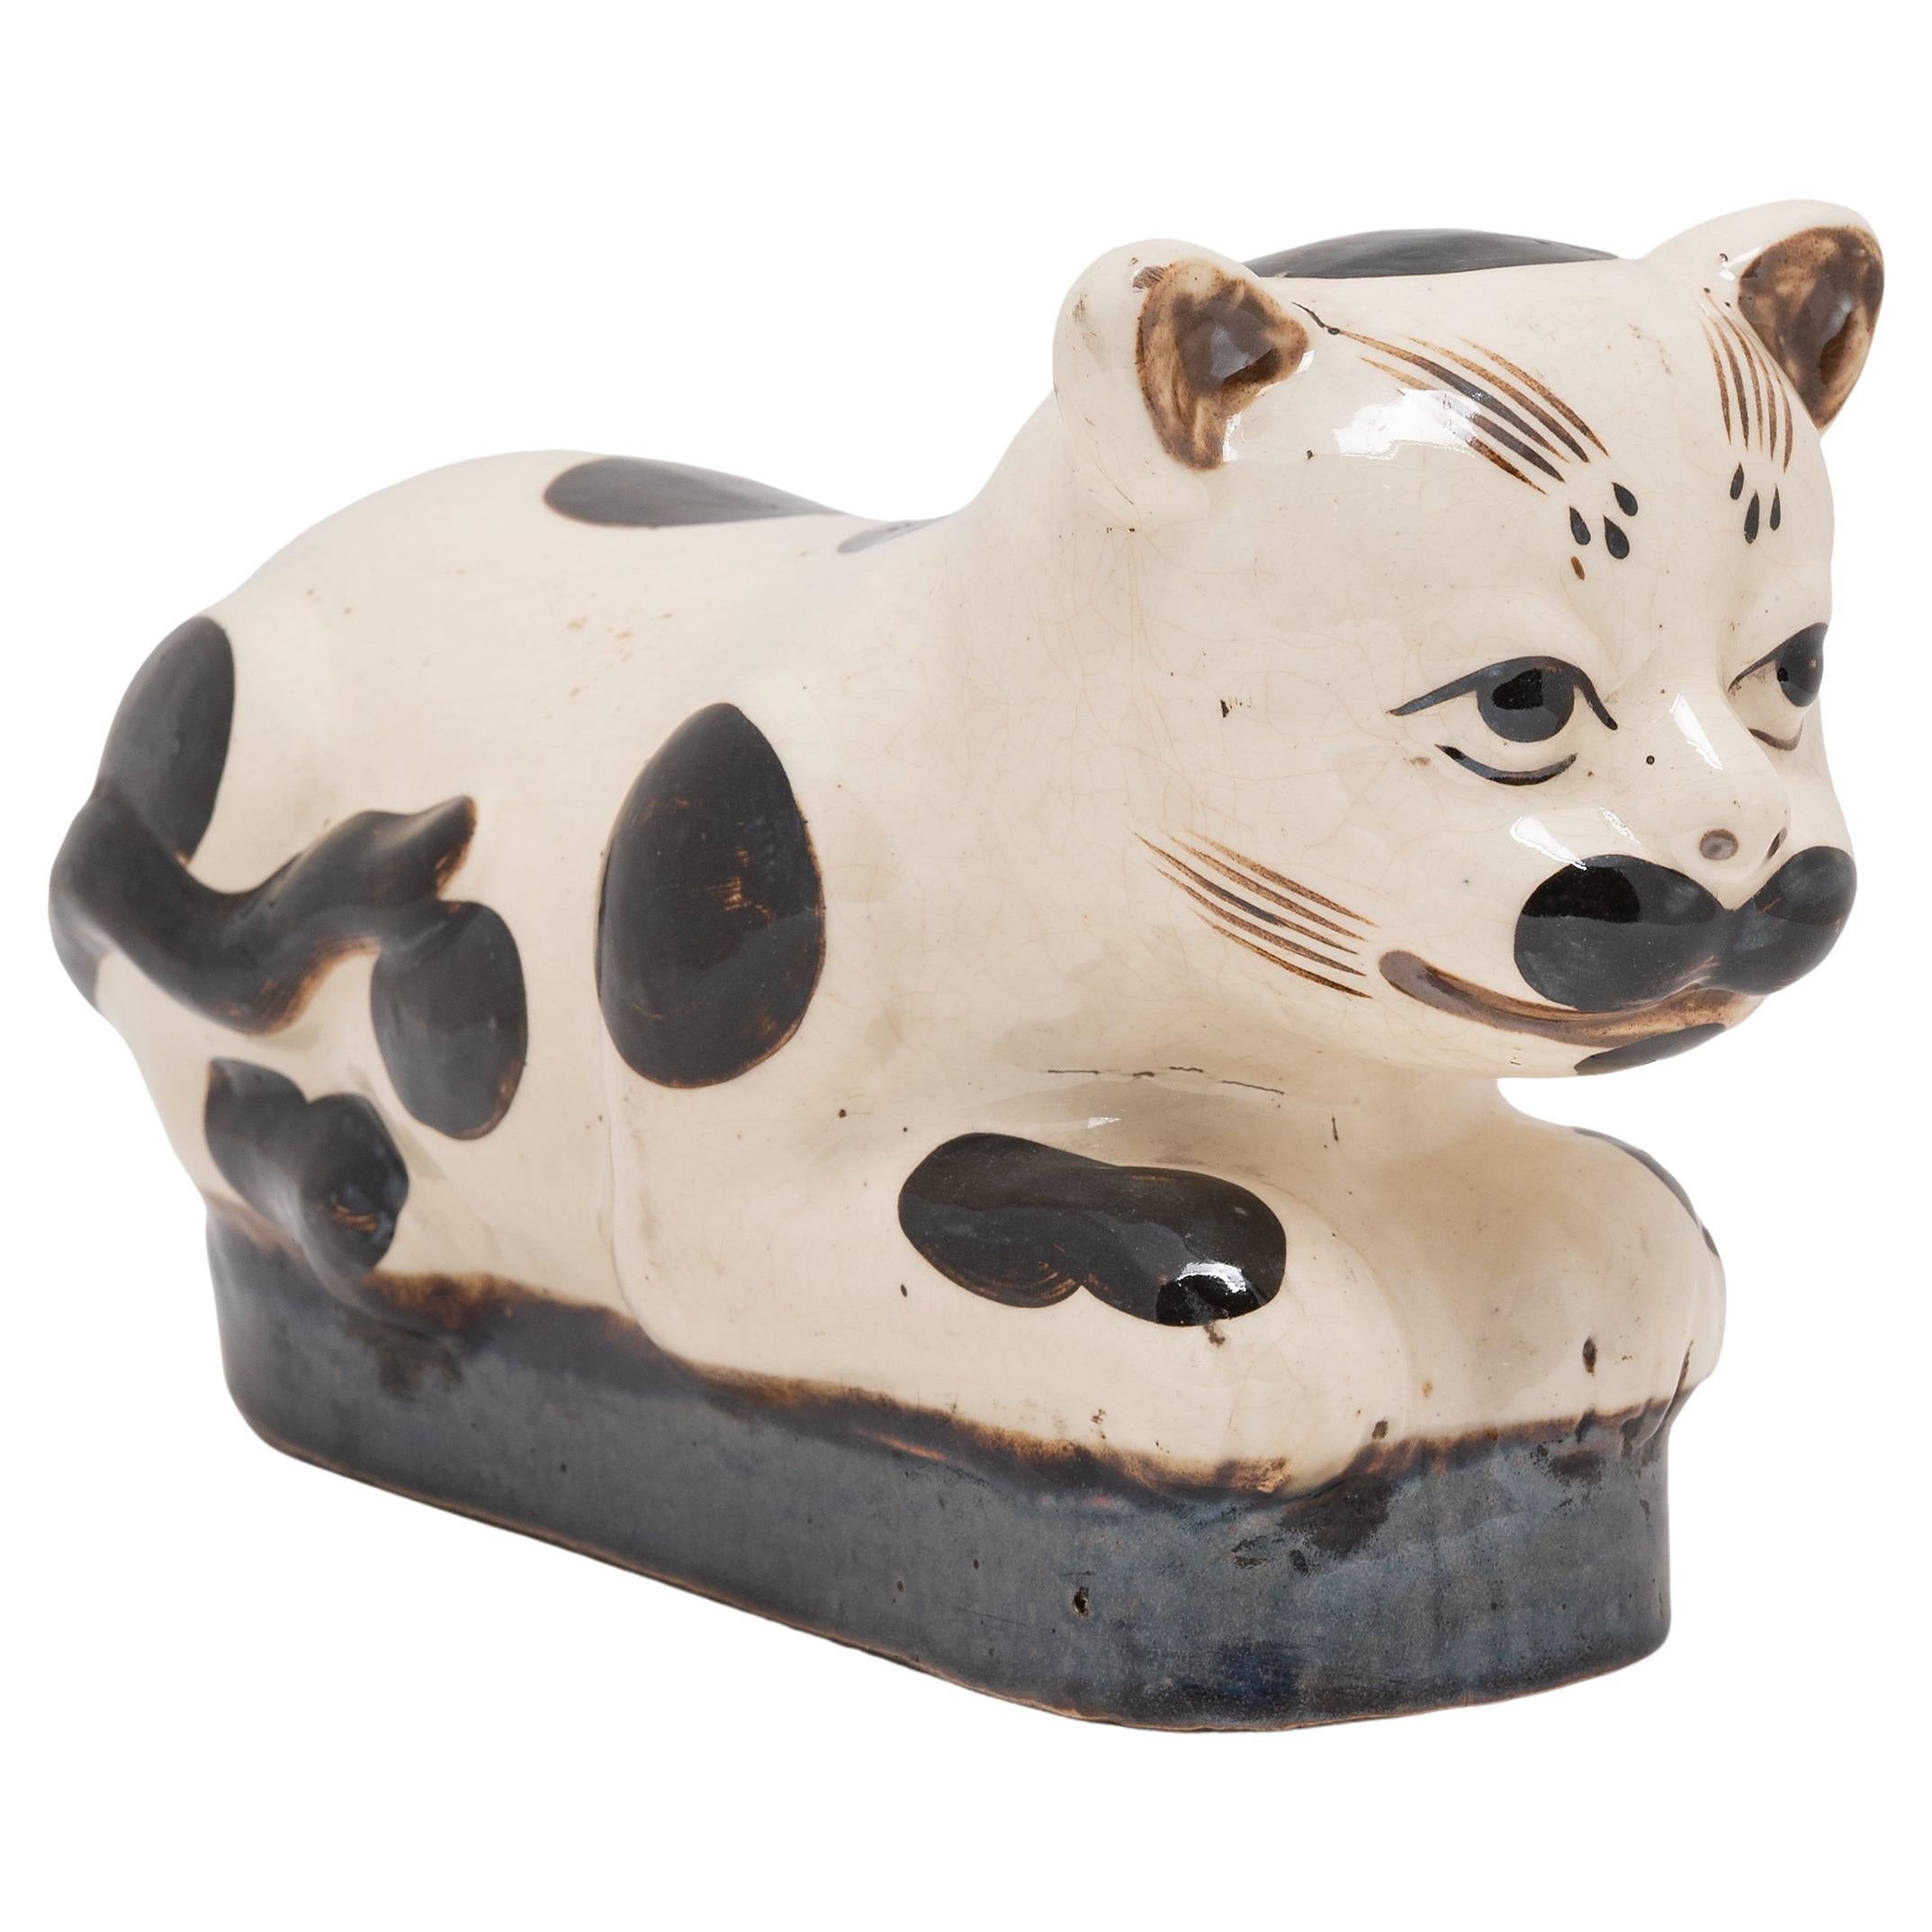 Appui-tête de chat tacheté en céramique chinoise, c. 1900